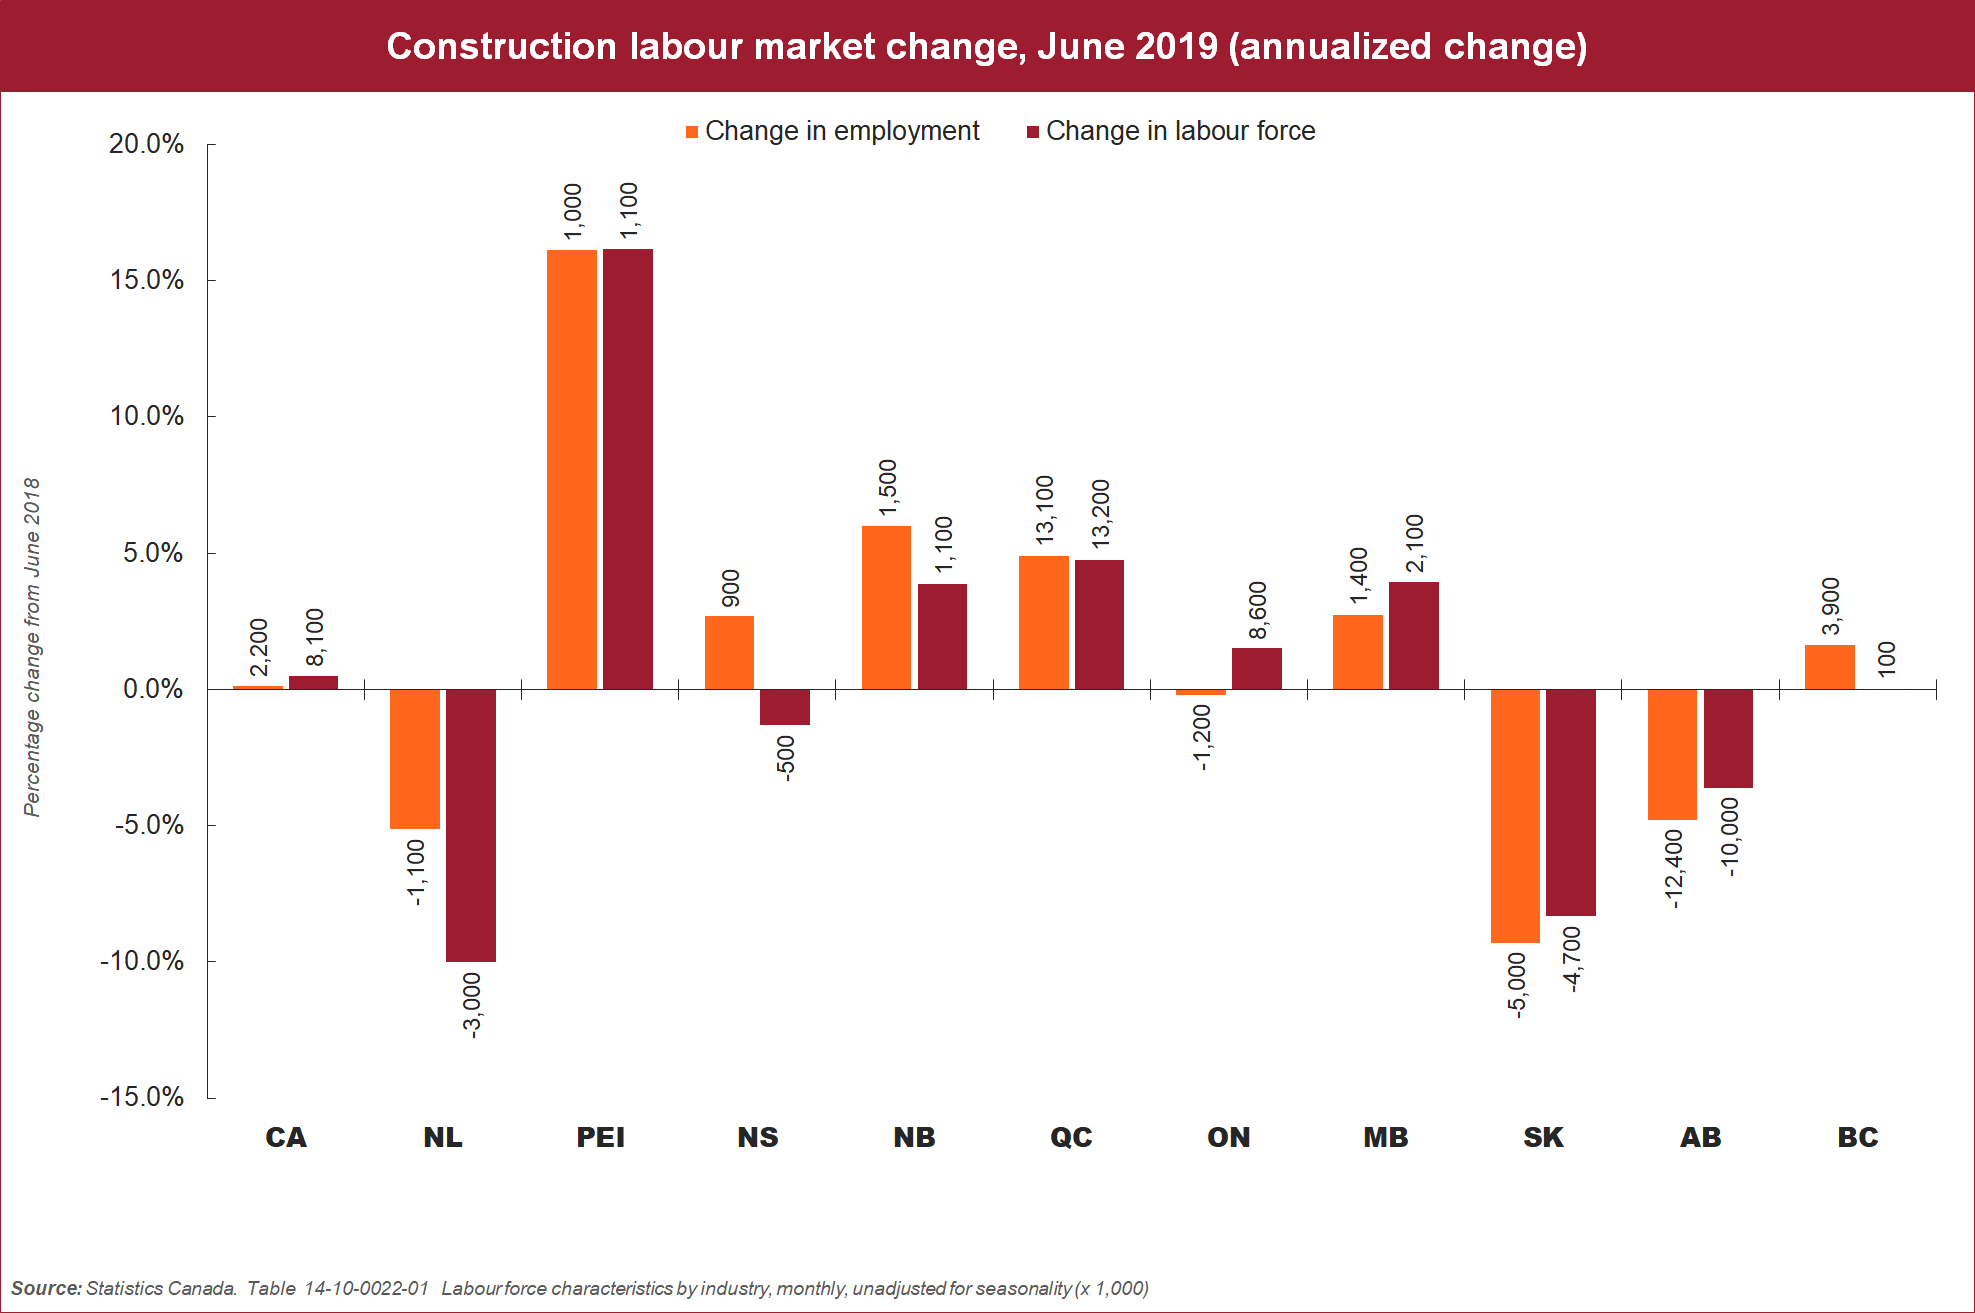 [graph] Construction labour market change, June 2019 (annualized change)